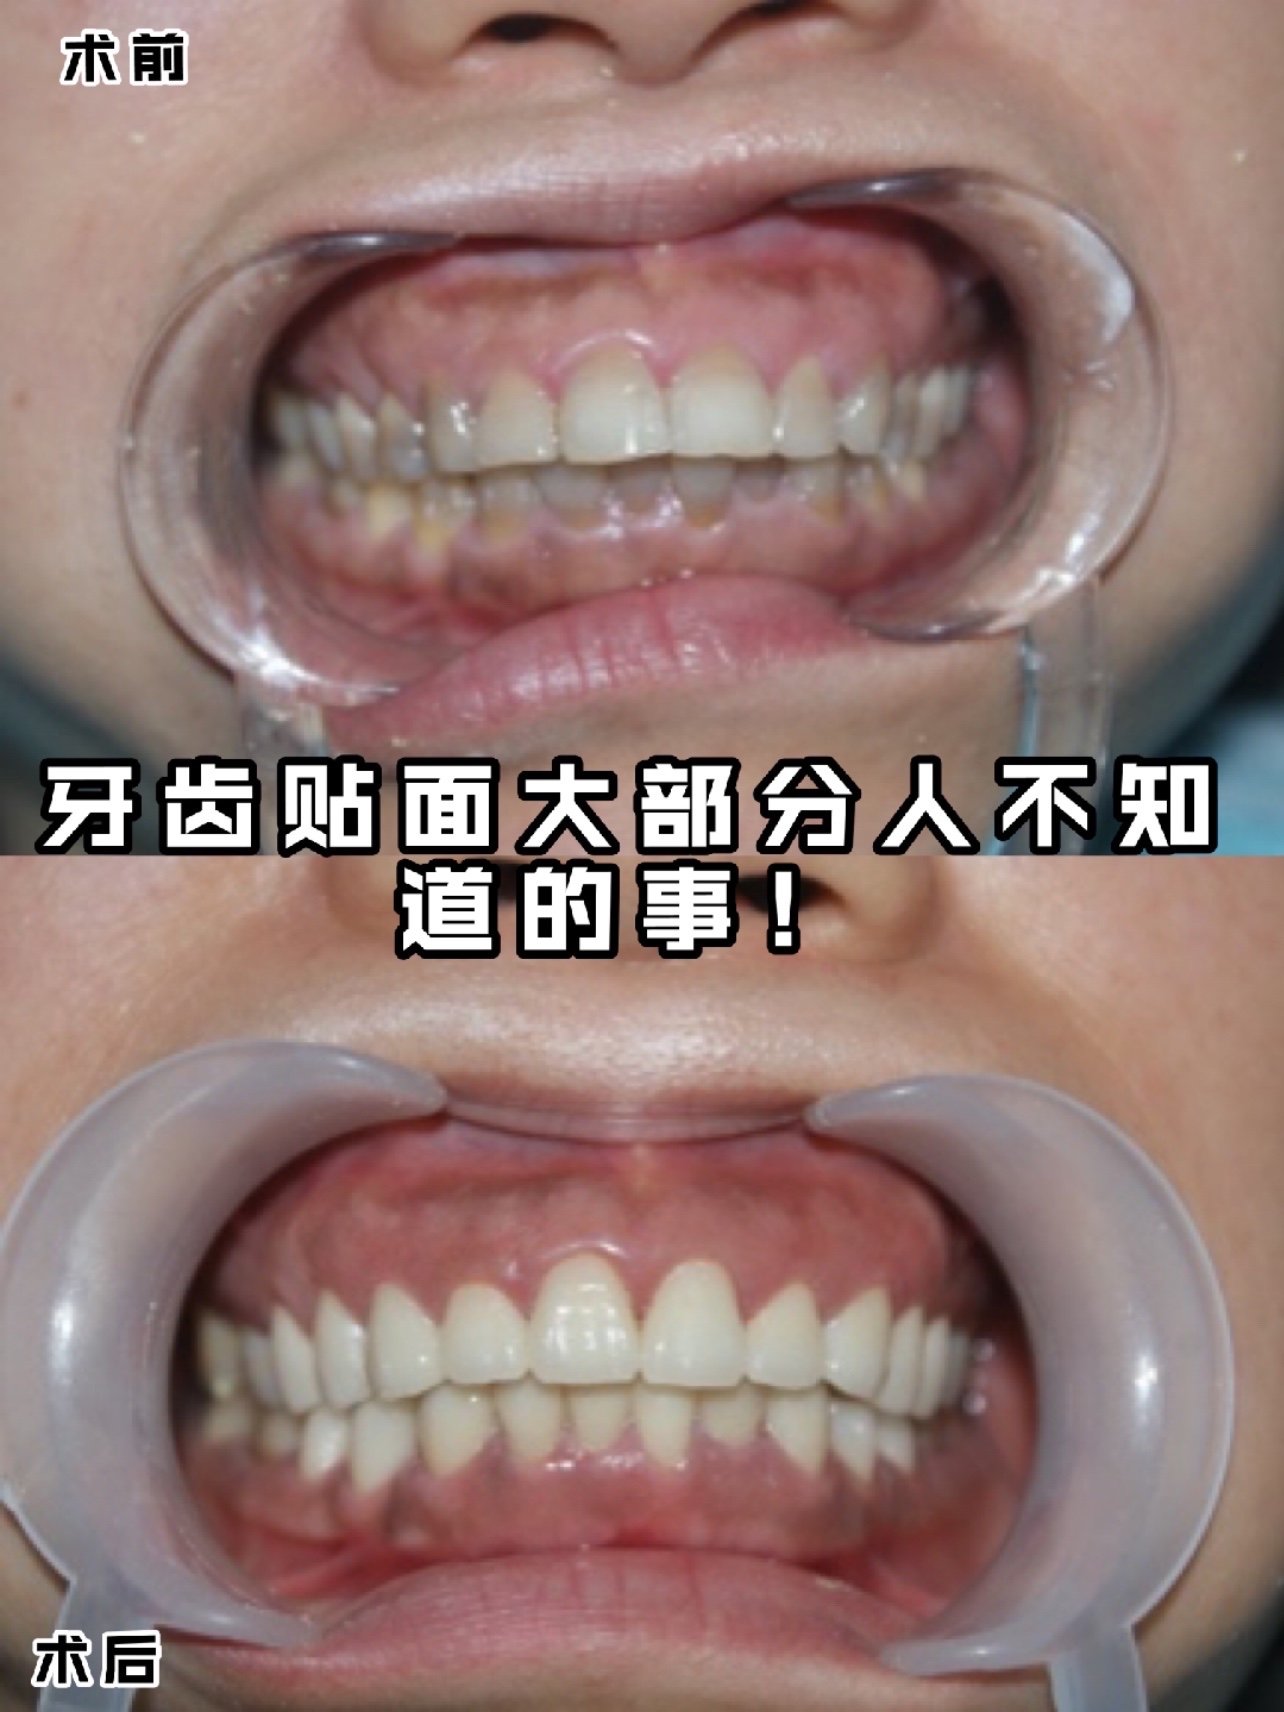 你是否有以下问题:牙齿形态异常,牙釉质发育不良,牙